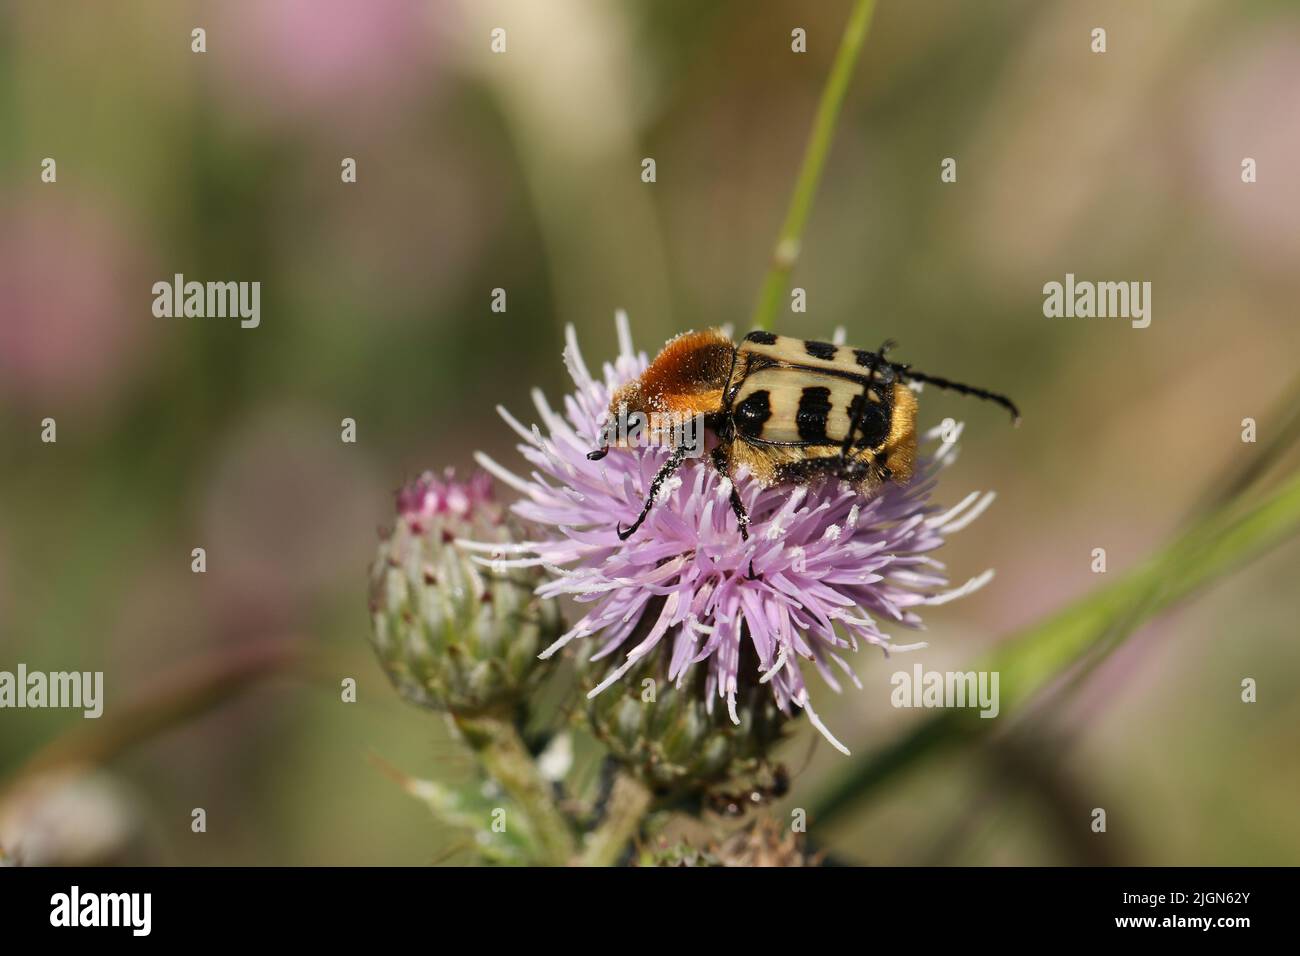 Un escarabajo de abeja extremadamente raro, Trichius fasciatus, alimentándose del polen de una flor de cardo. Foto de stock